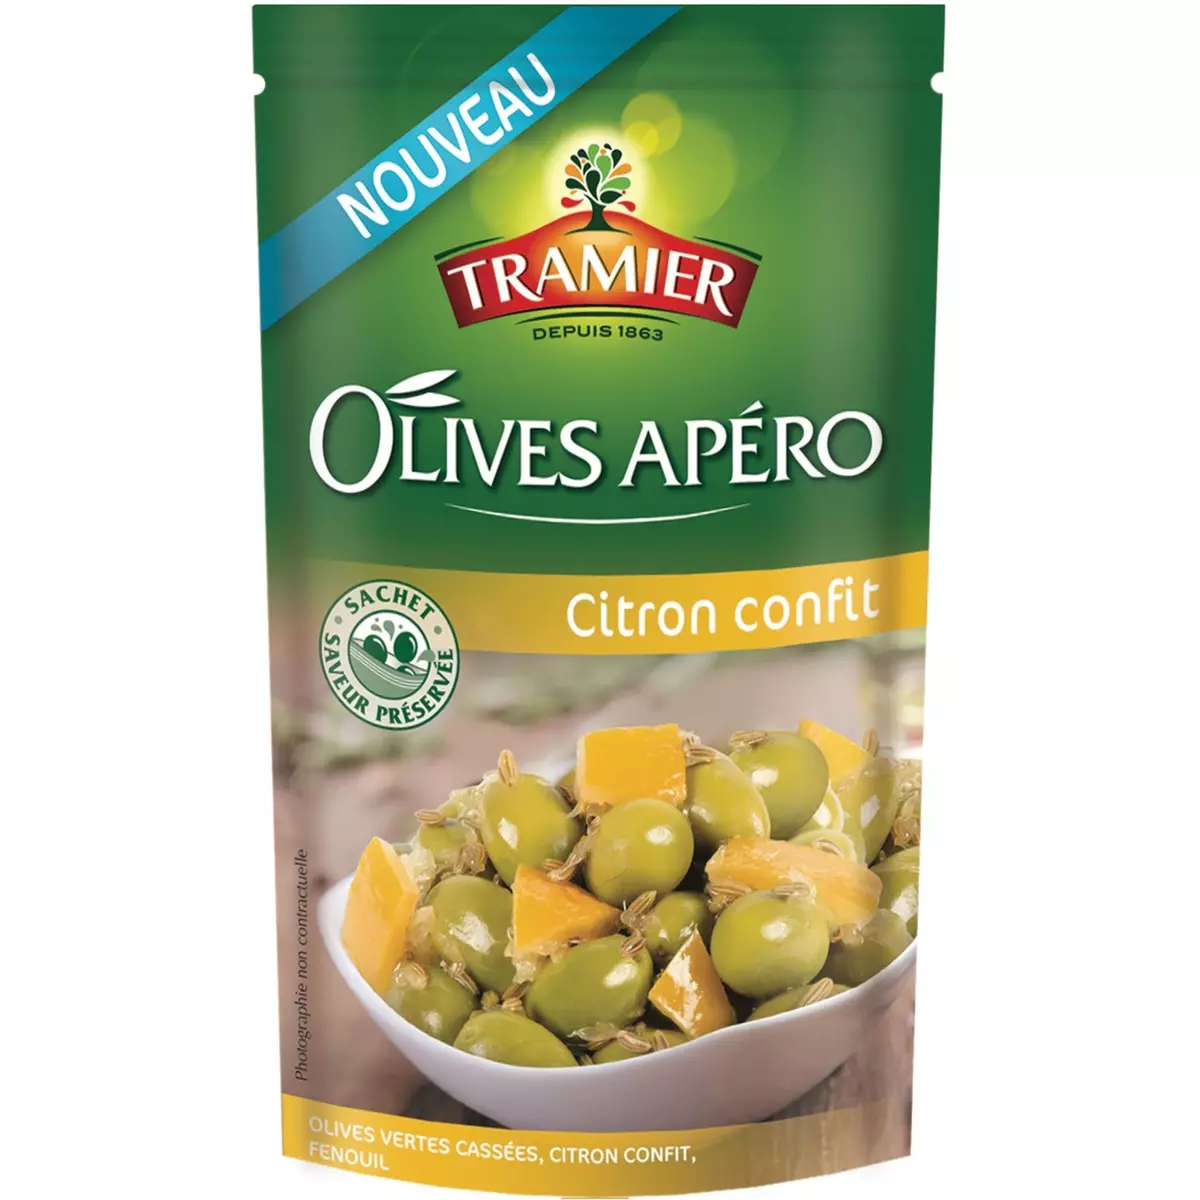 TRAMIER Tramier olives apéro citron confit sachet 150g